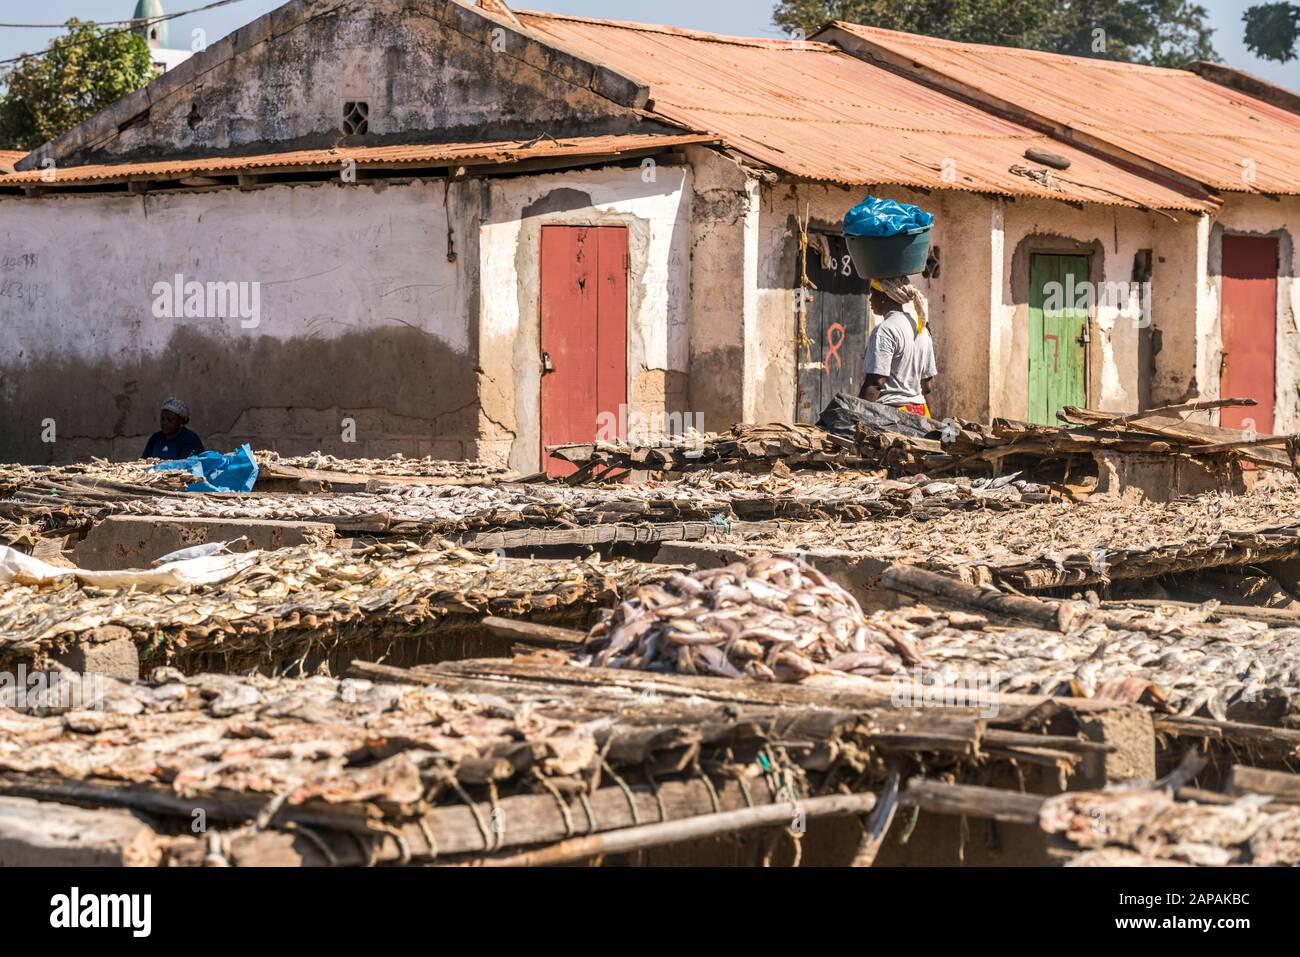 Holzgestelle mit Fischen zum trocknen, Ghana Town, Gambia, Westafrika  |  wooden frames with dry fish, Ghana Town, Gambia, West Africa, Stock Photo